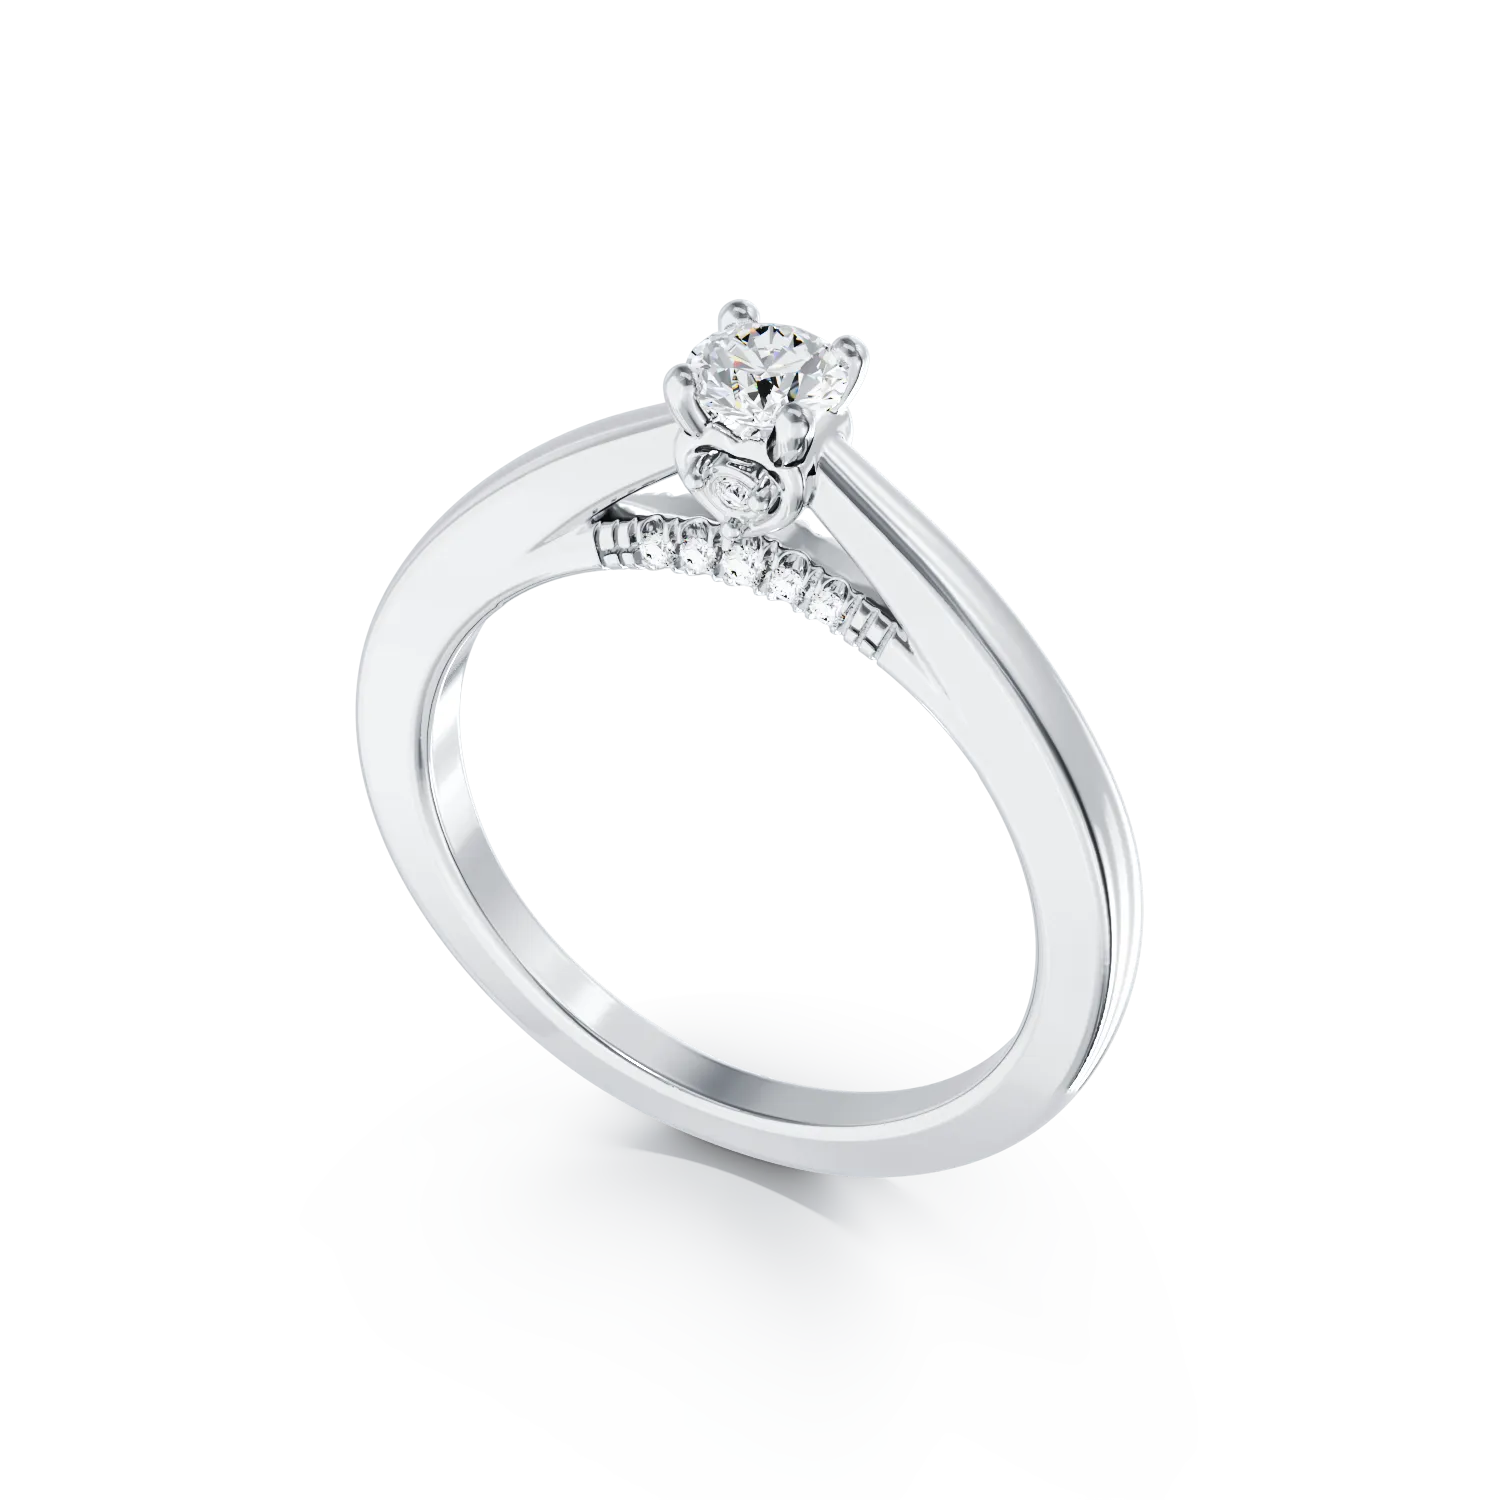 18 karátos fehérarany eljegyzési gyűrű 0.19 kat gyémánttal és 0.05 ct gyémánttal